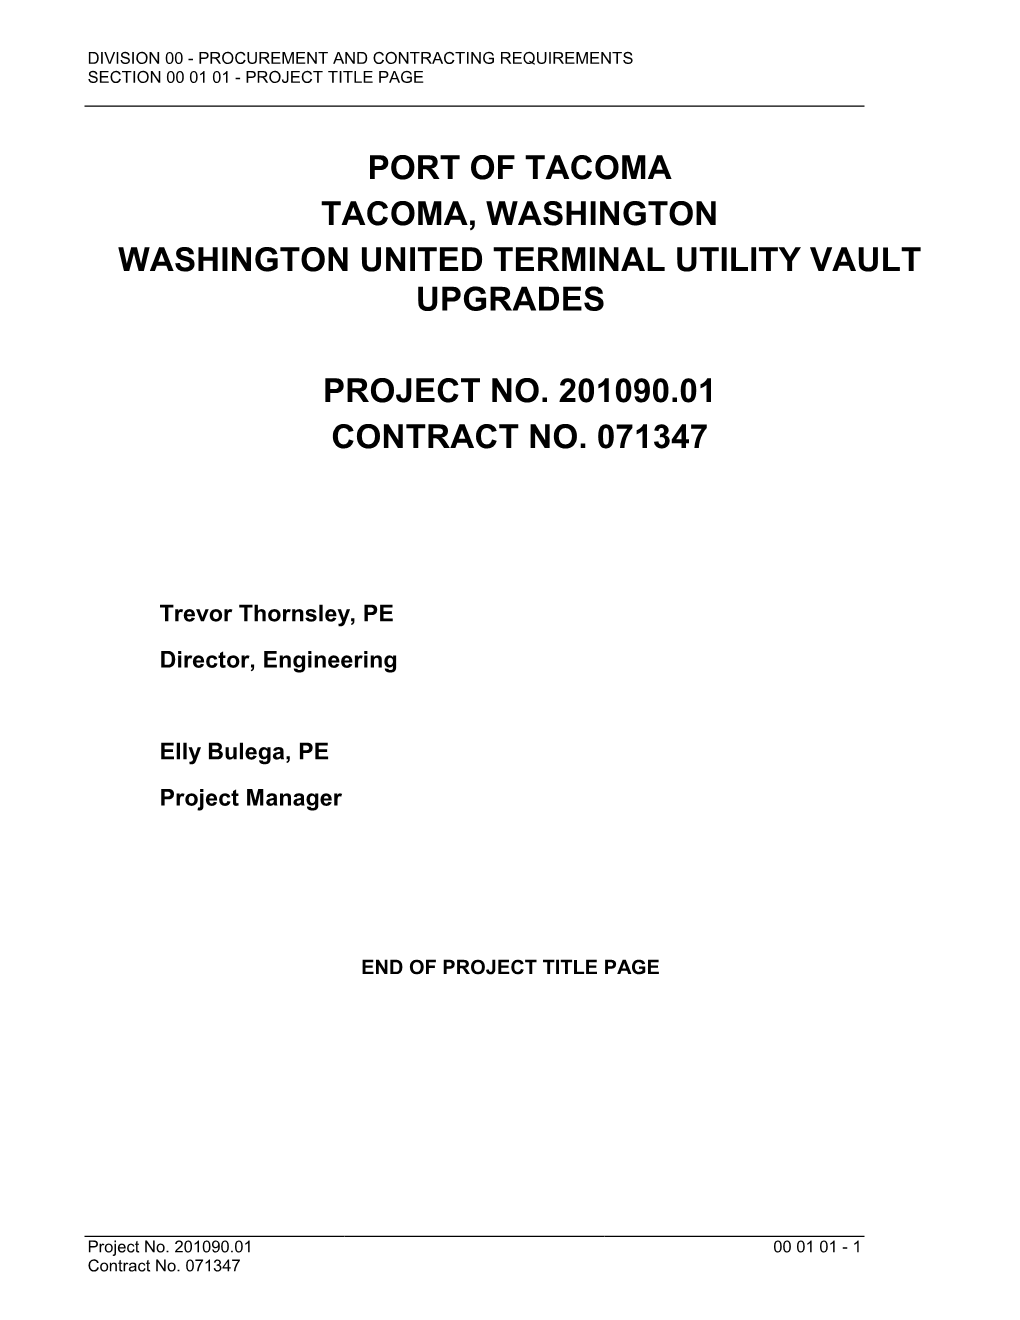 Port of Tacoma Tacoma, Washington Washington United Terminal Utility Vault Upgrades